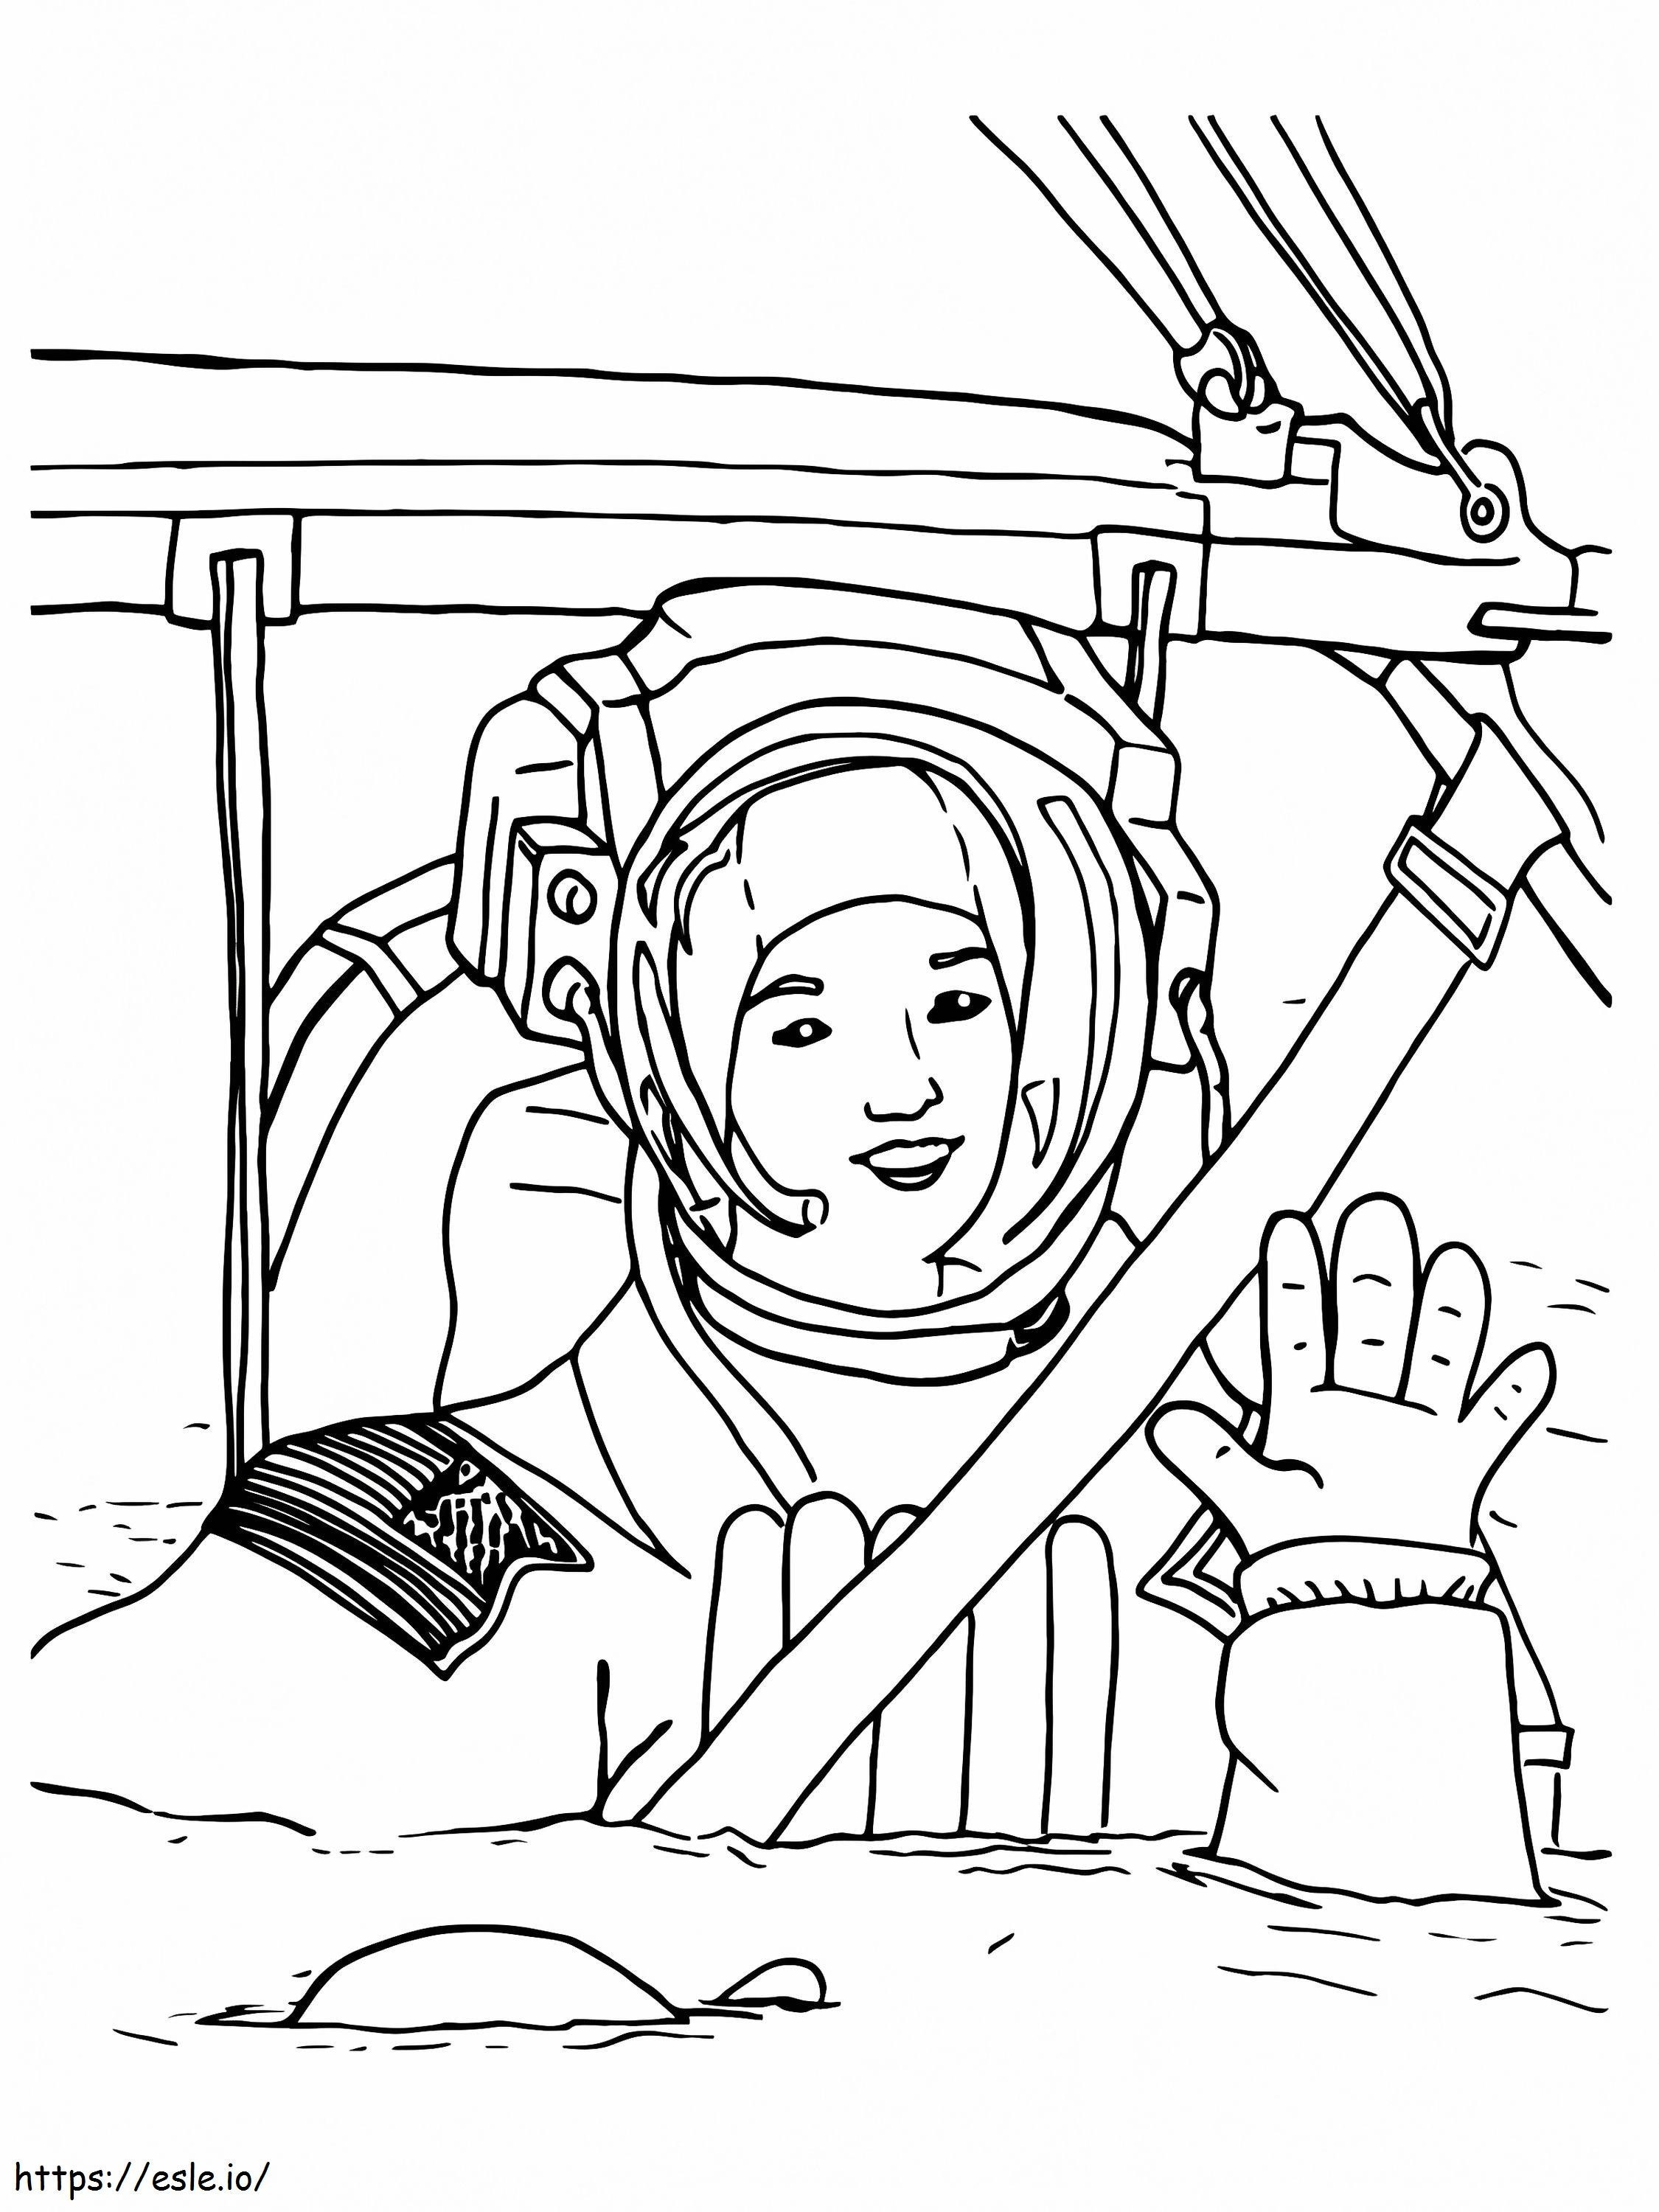 Astronauta da Nasa acenando para colorir